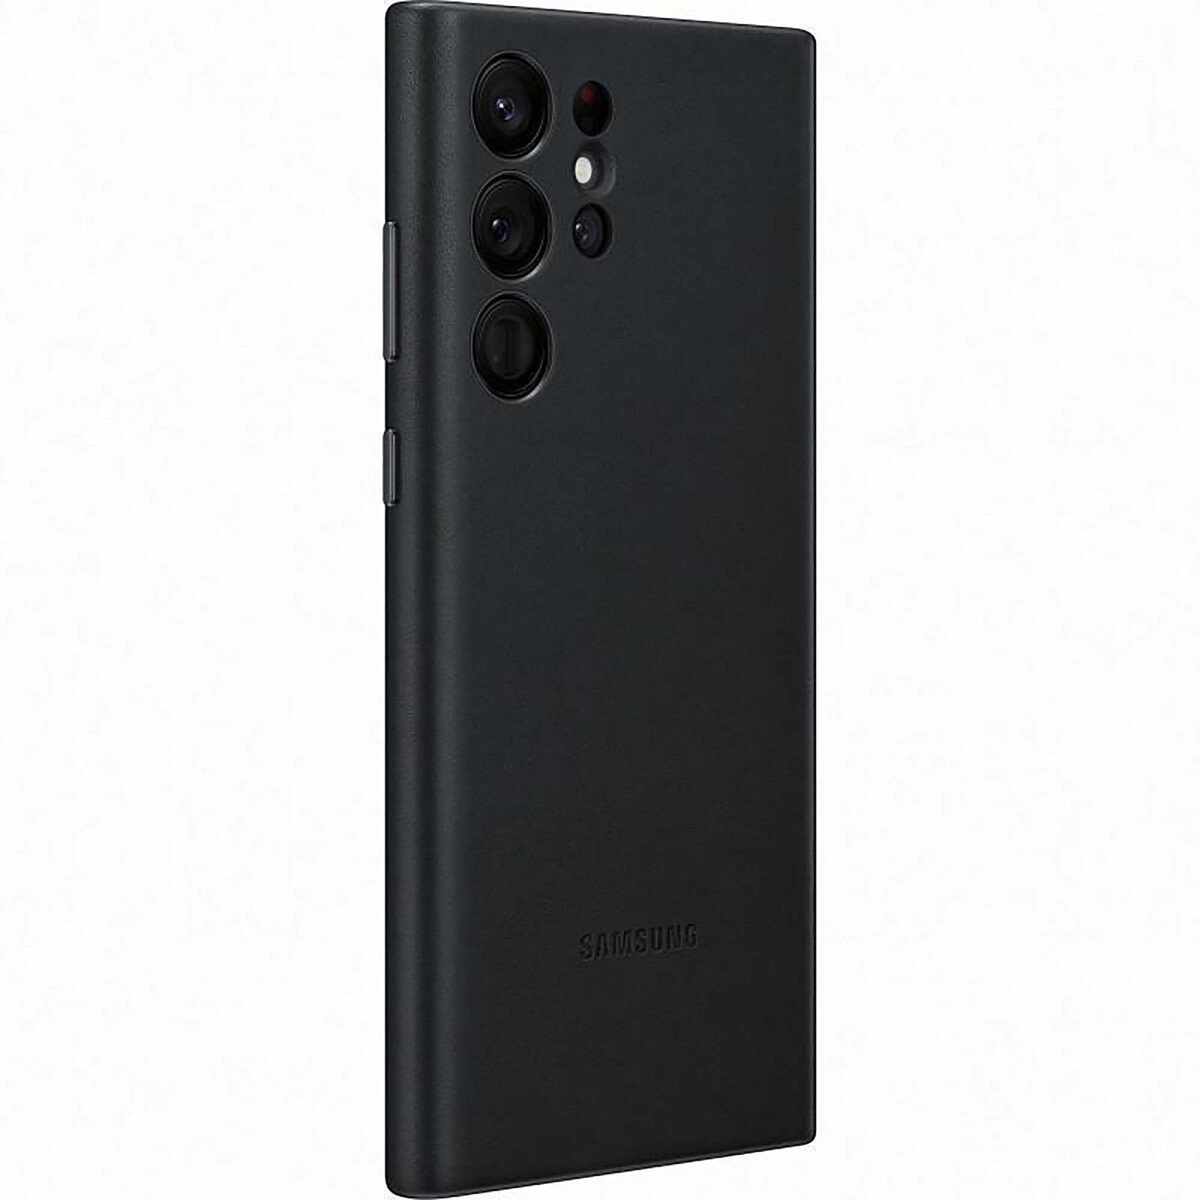 Samsung Galaxy S22 Ultra Leather Cover Case-Black (EF-VS908LBEGWW)